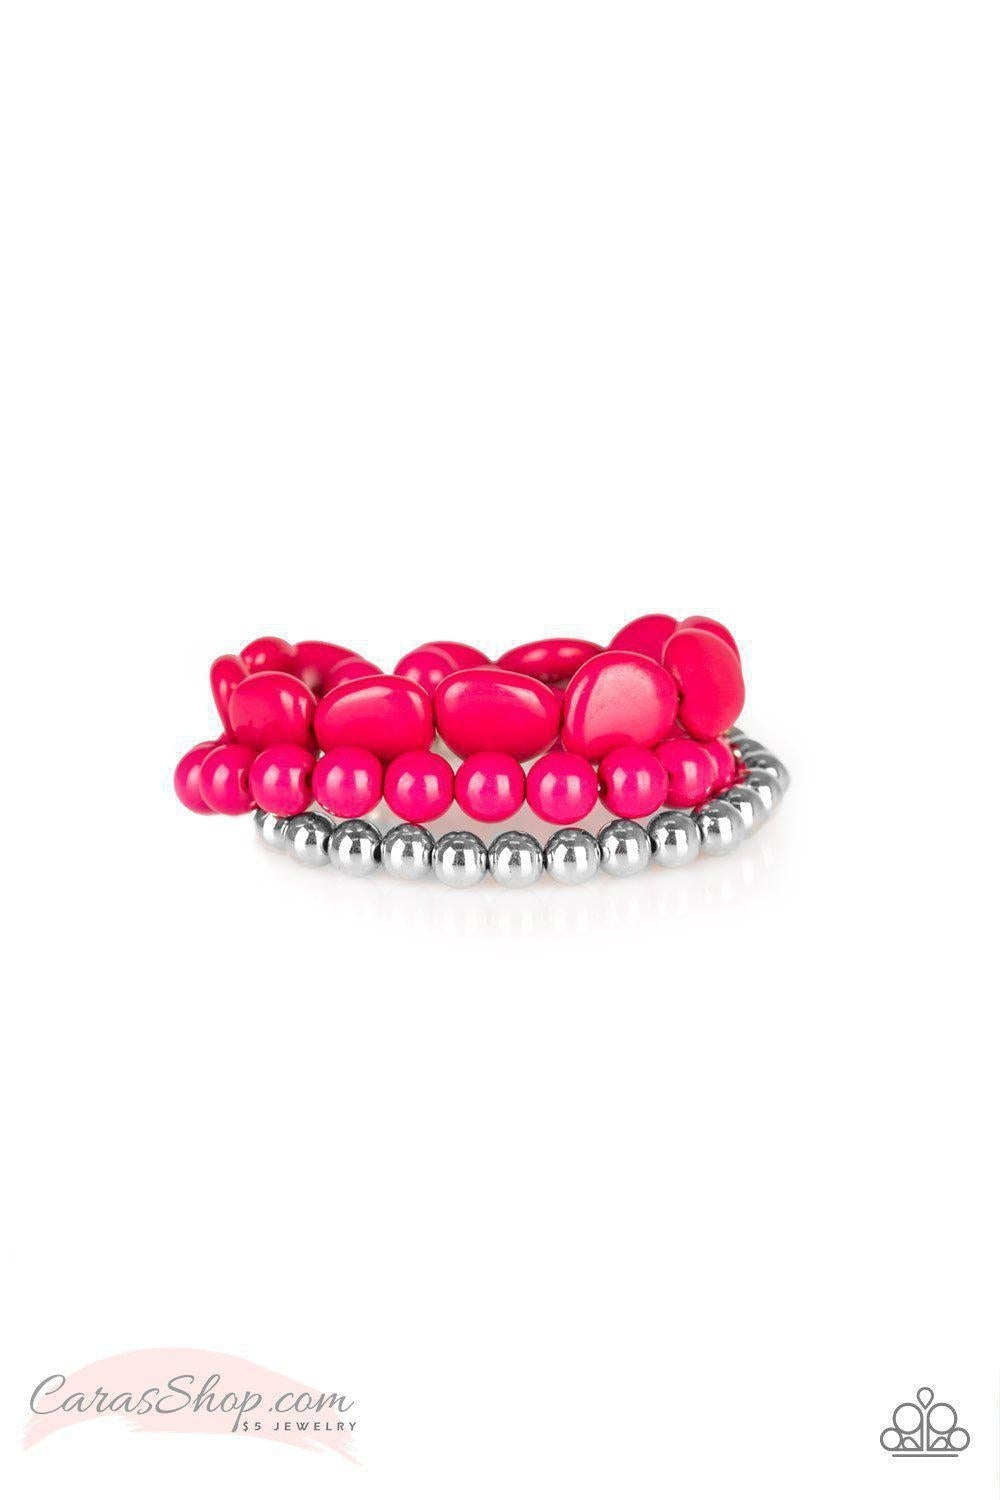 Pink Paparazzi Jewelry-CarasShop.com - $5 Jewelry by Cara Jewels